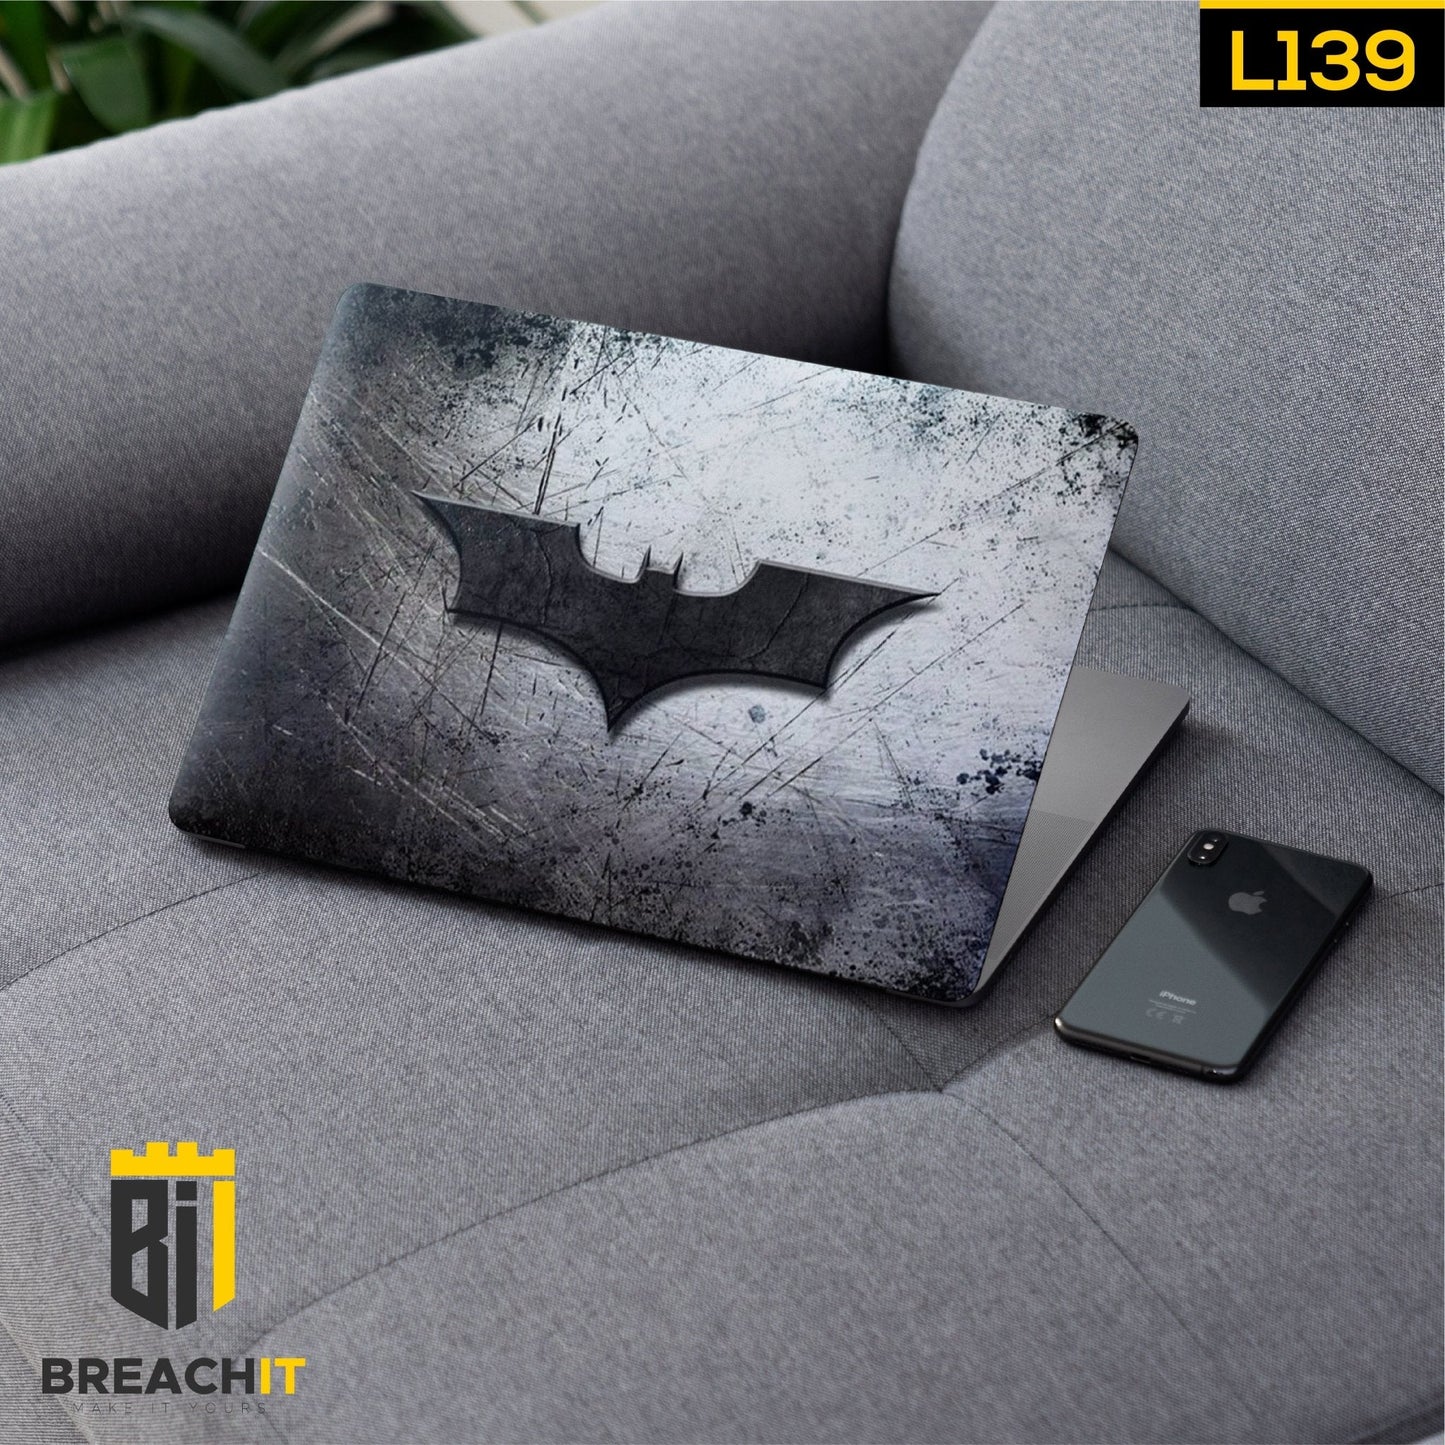 L139 Batman Laptop Skin - BREACHIT